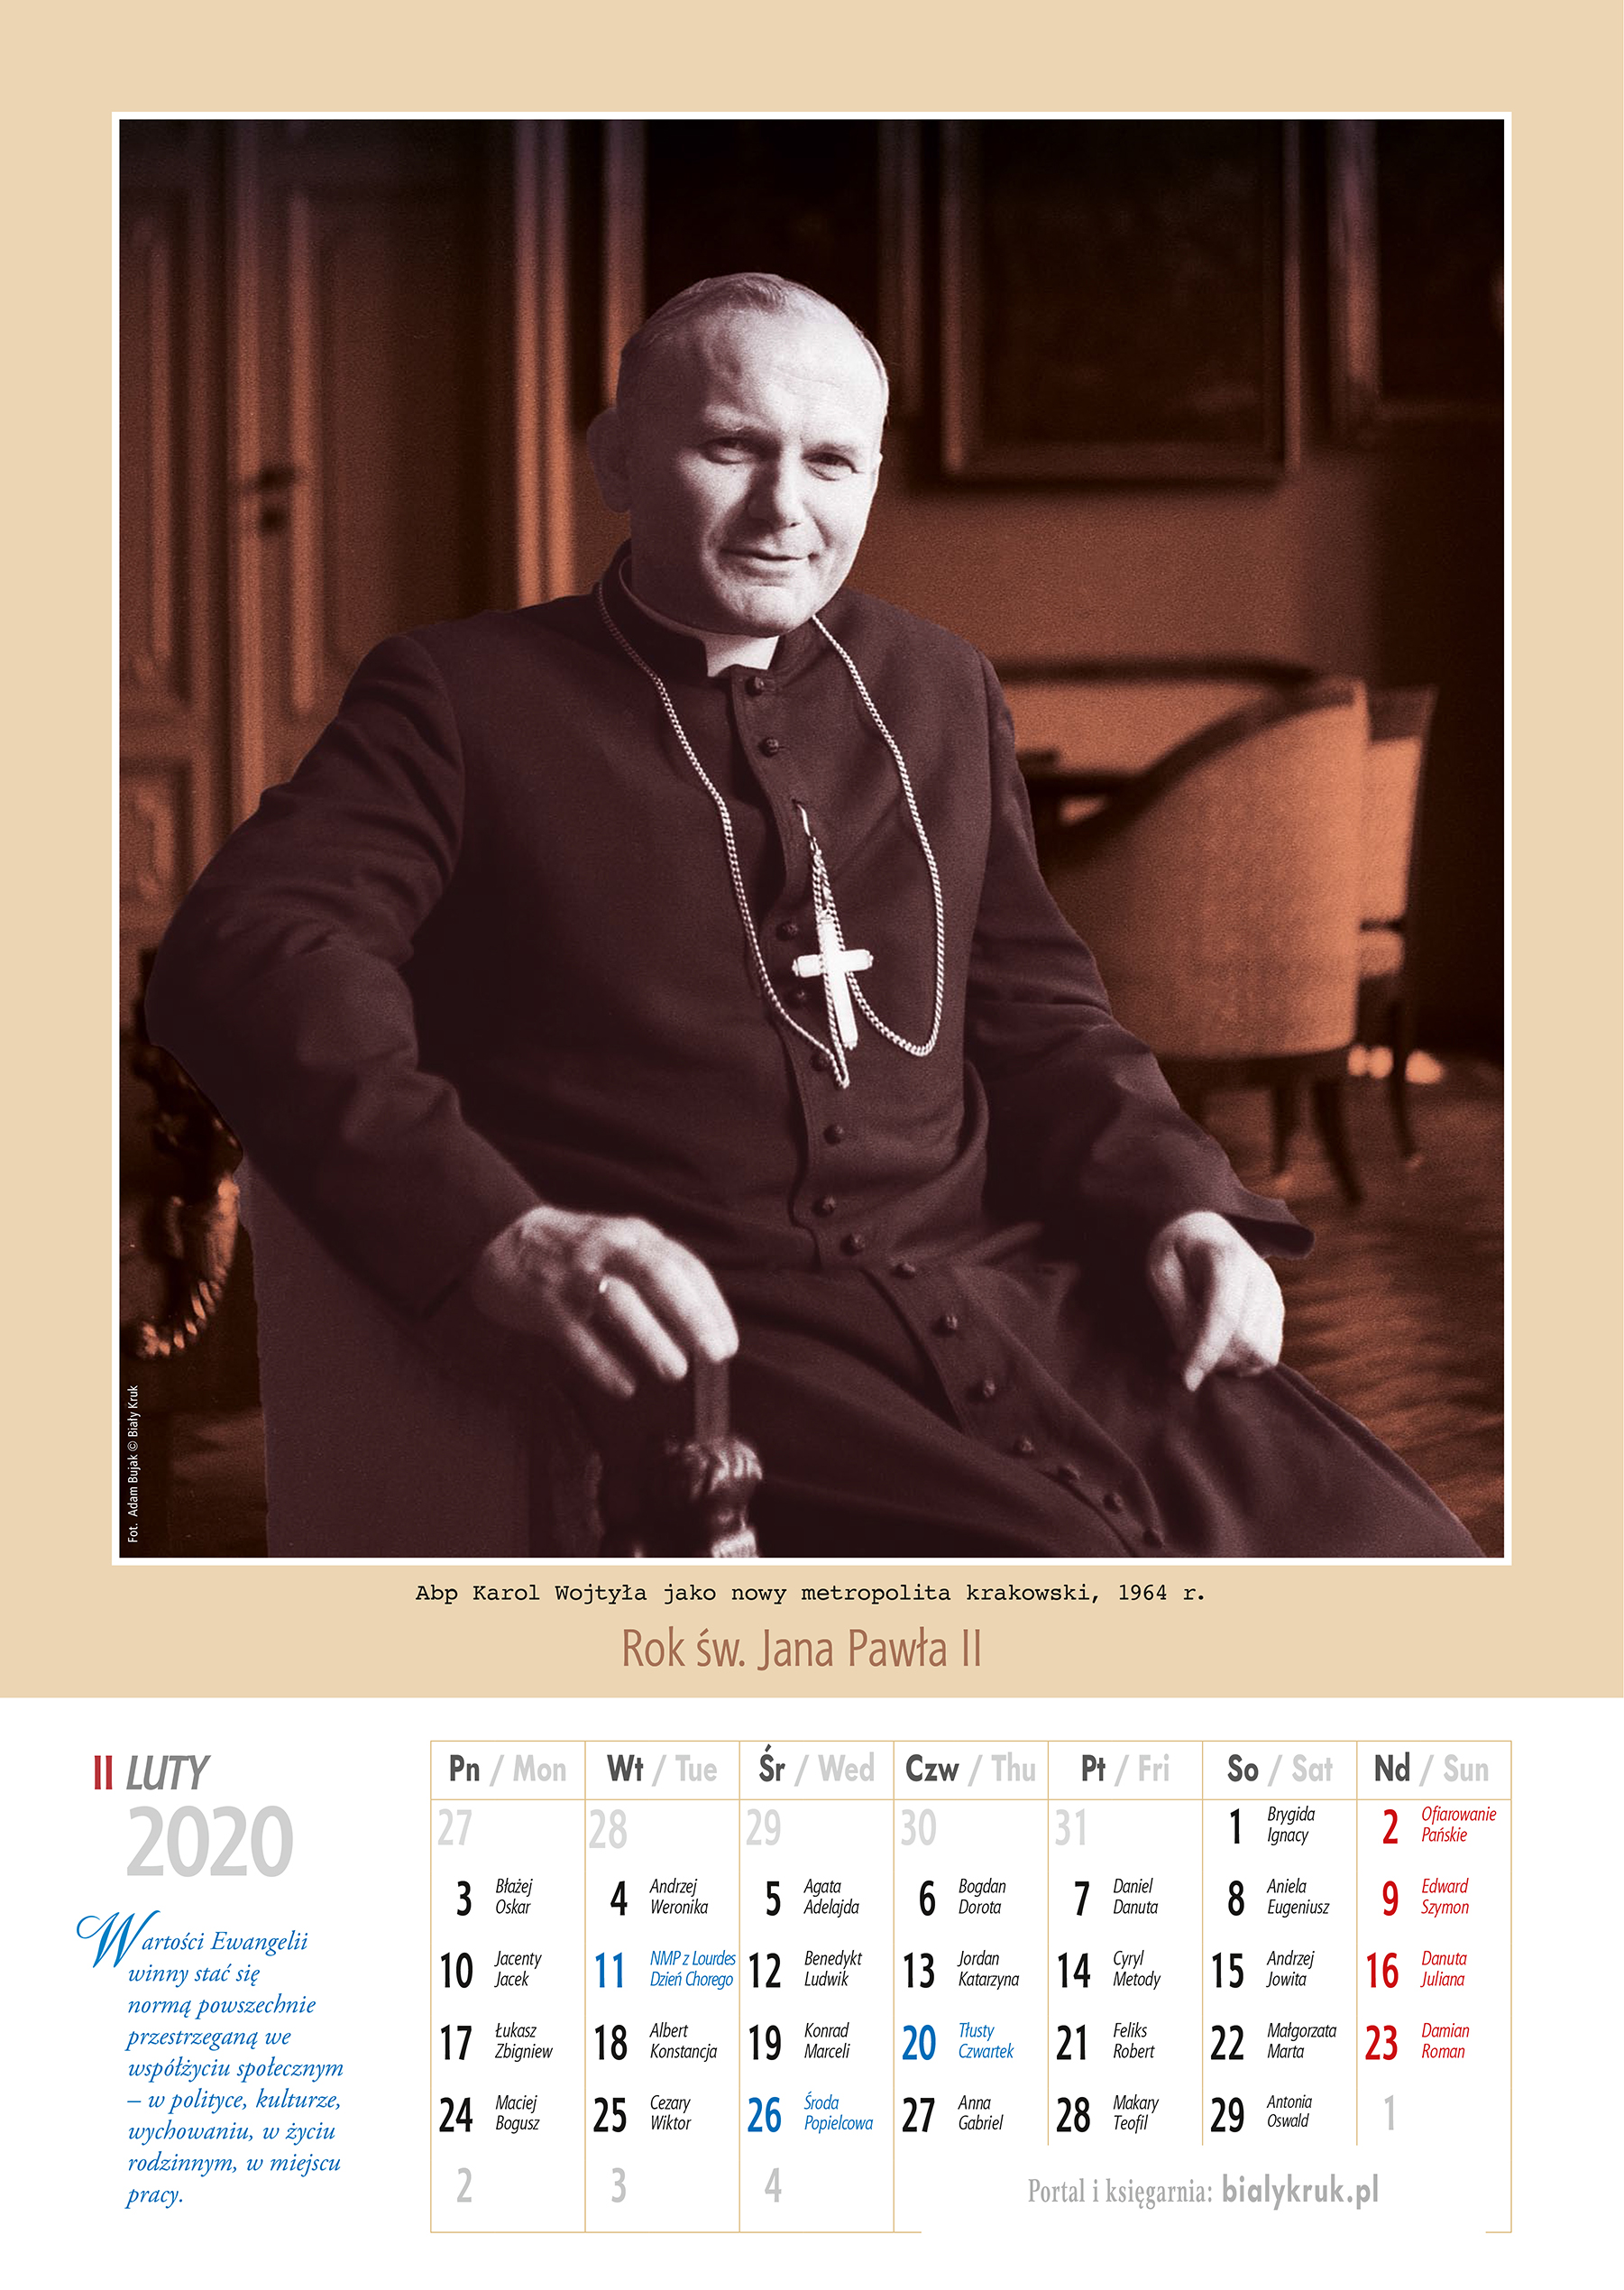 Kalendarz papieski 2020